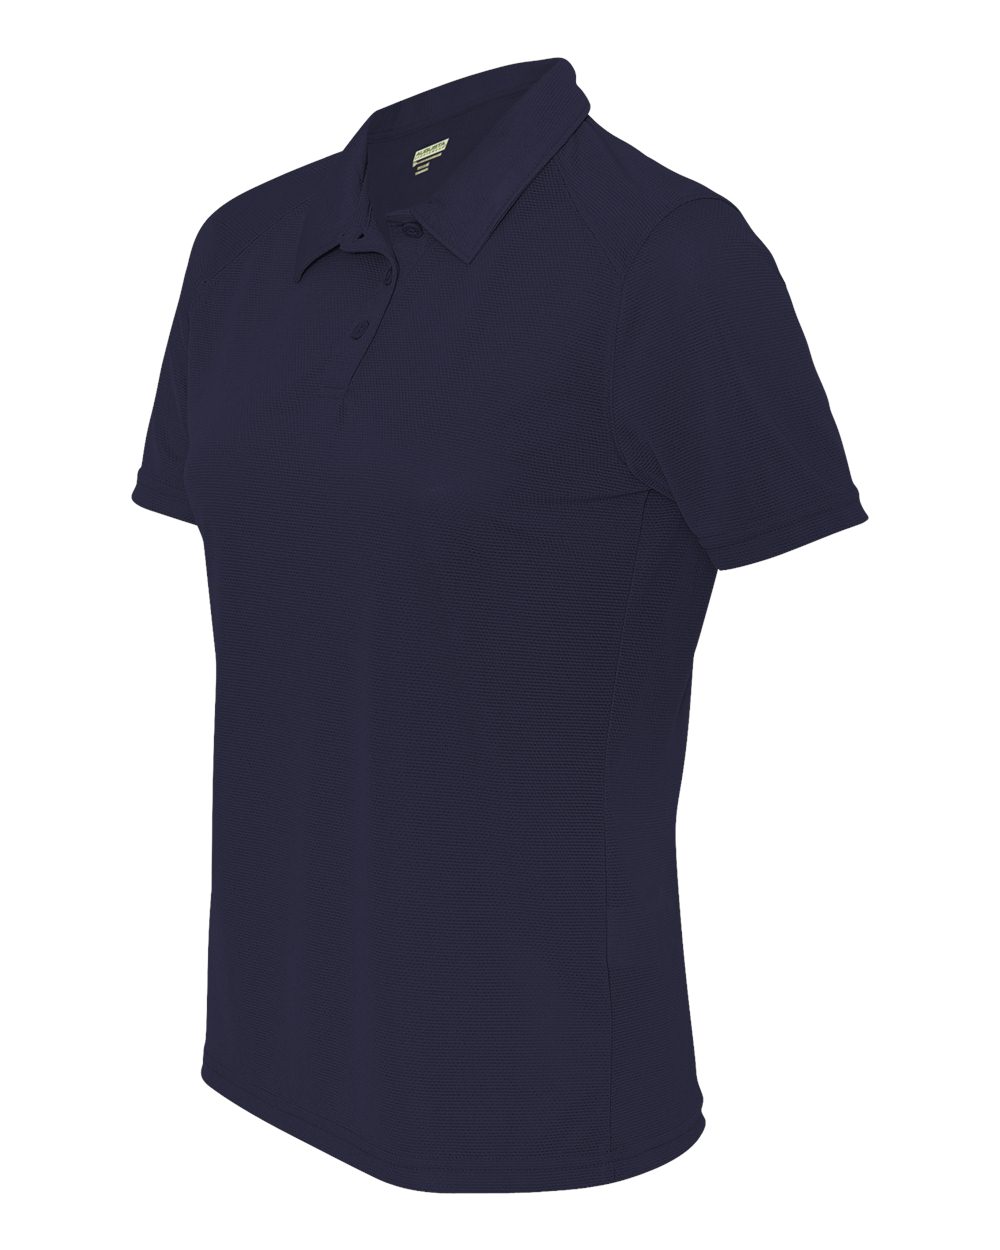 Augusta Sportswear 5002 - Ladies' Vision Textured Knit Sport Shirt